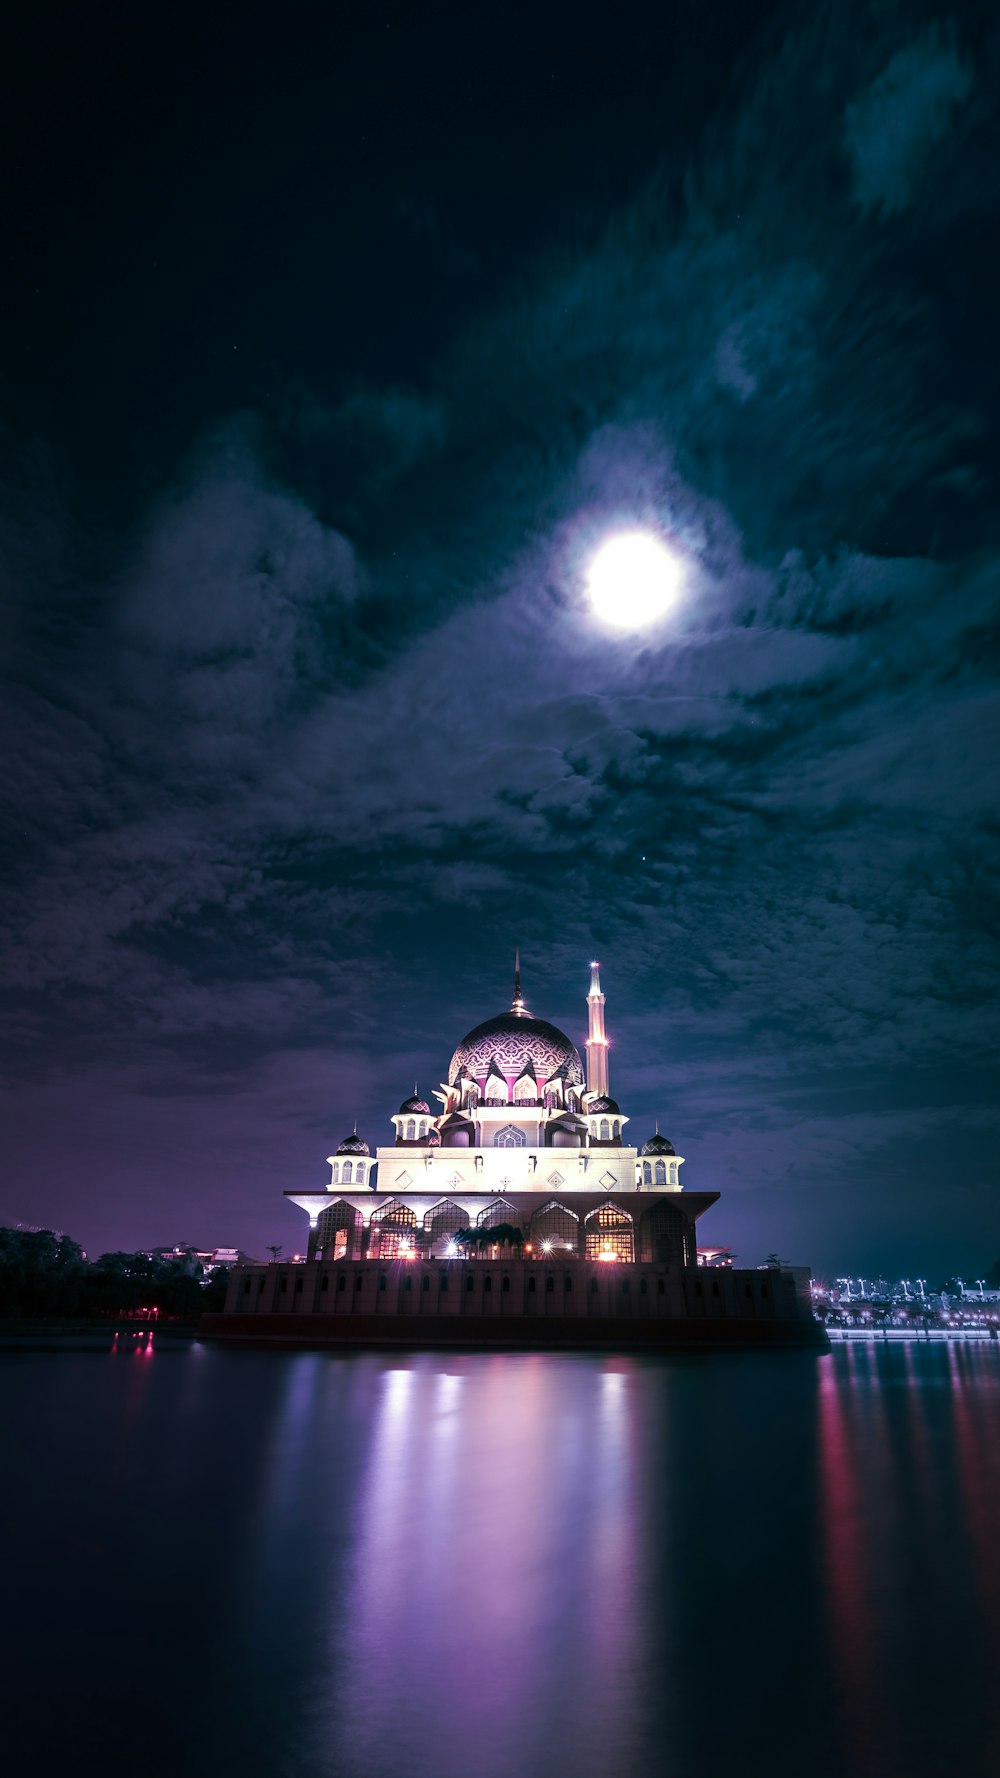 Kuppelgebäude im Mondlicht